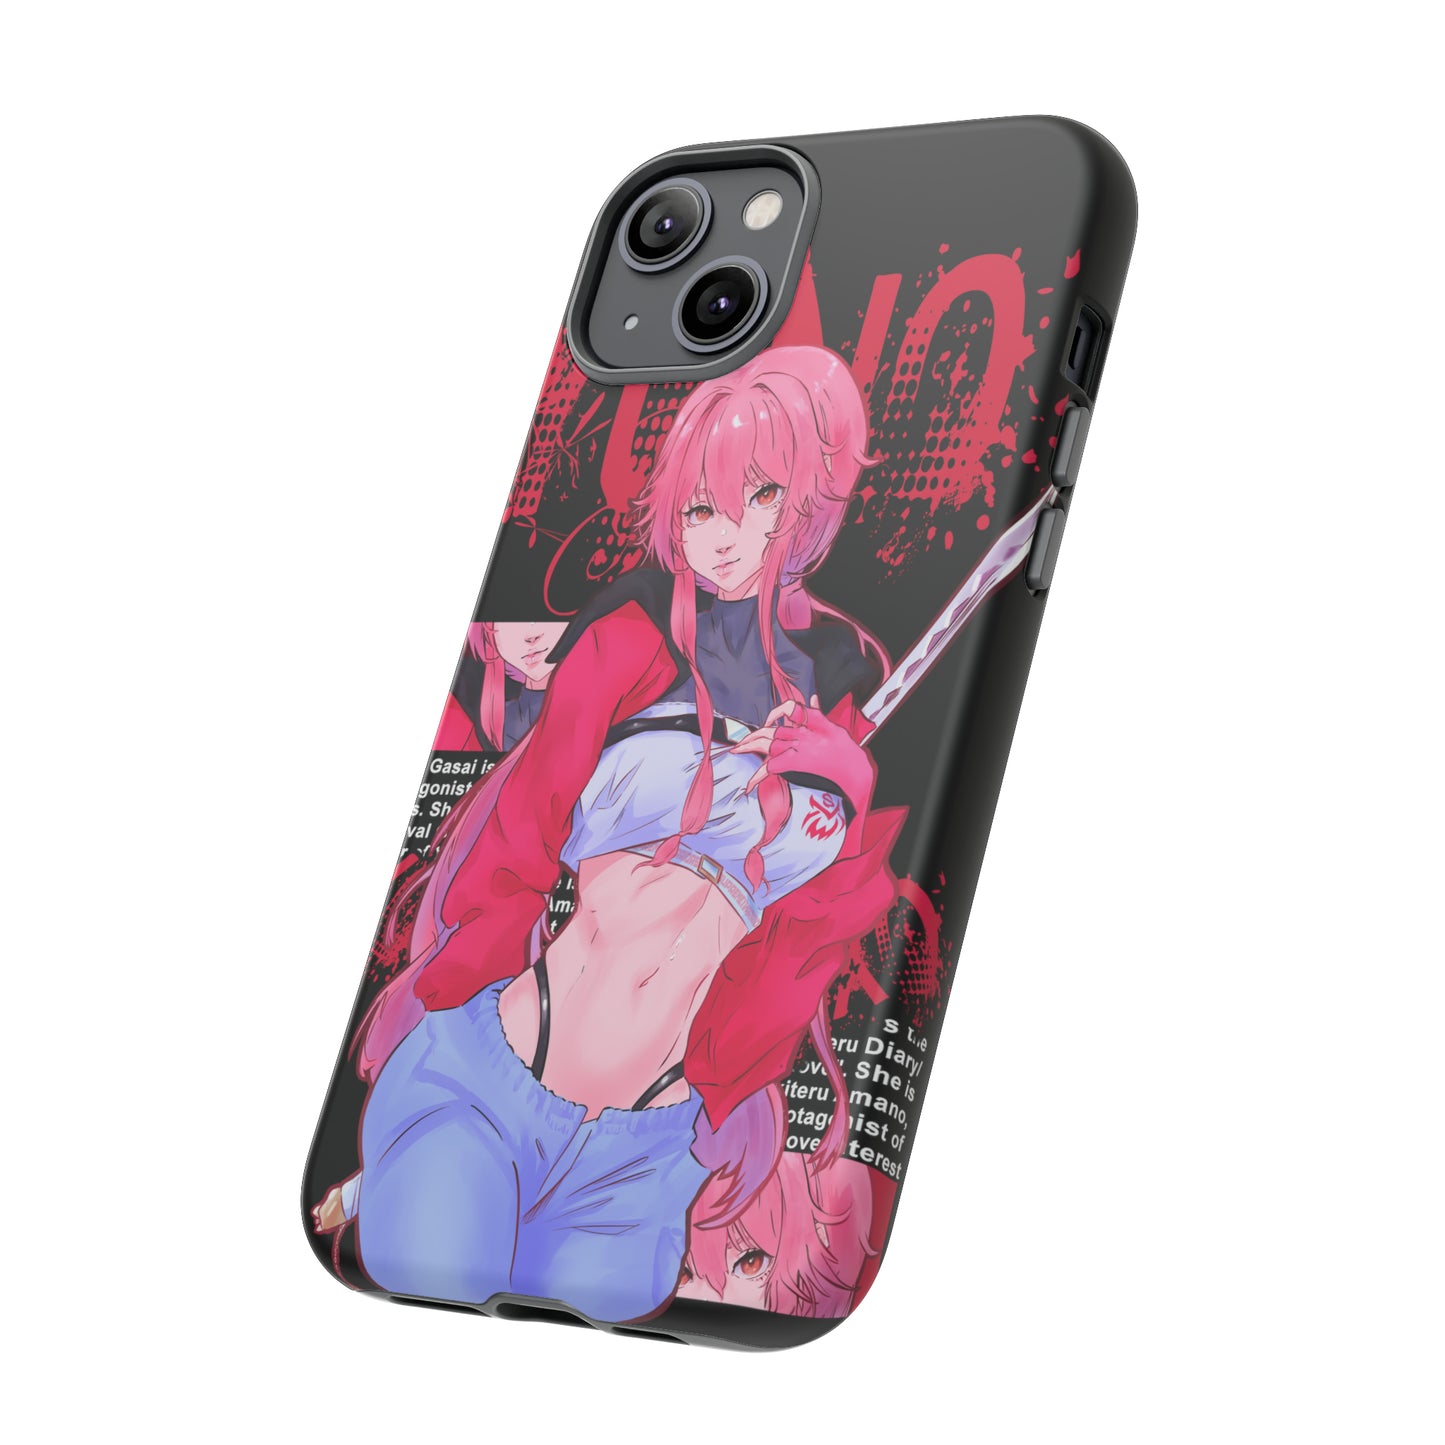 Yuno iPhone Case